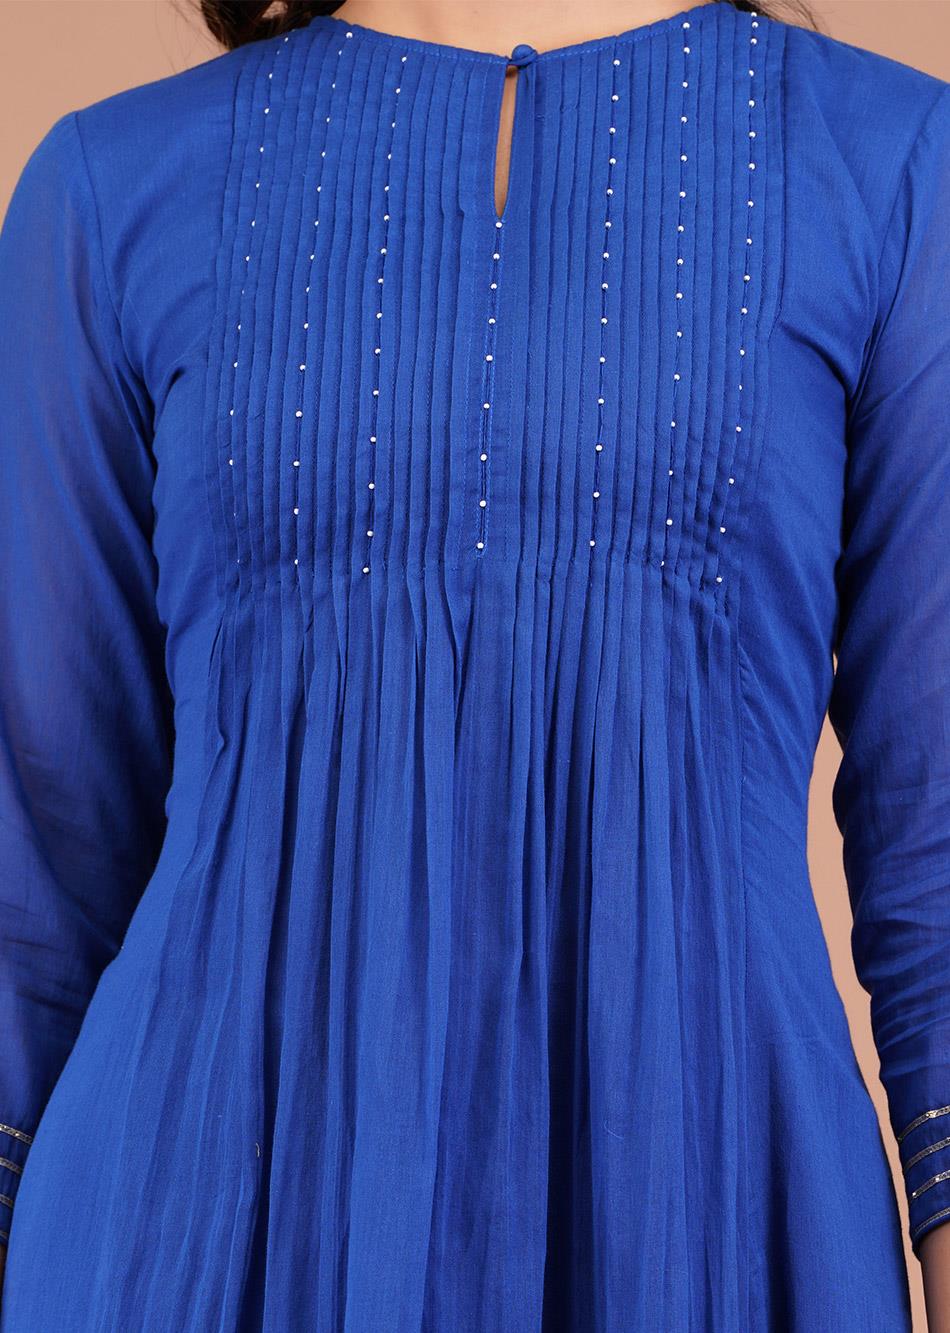 Blue Pin tucks Anarkali Kurta By Jovi Fashion